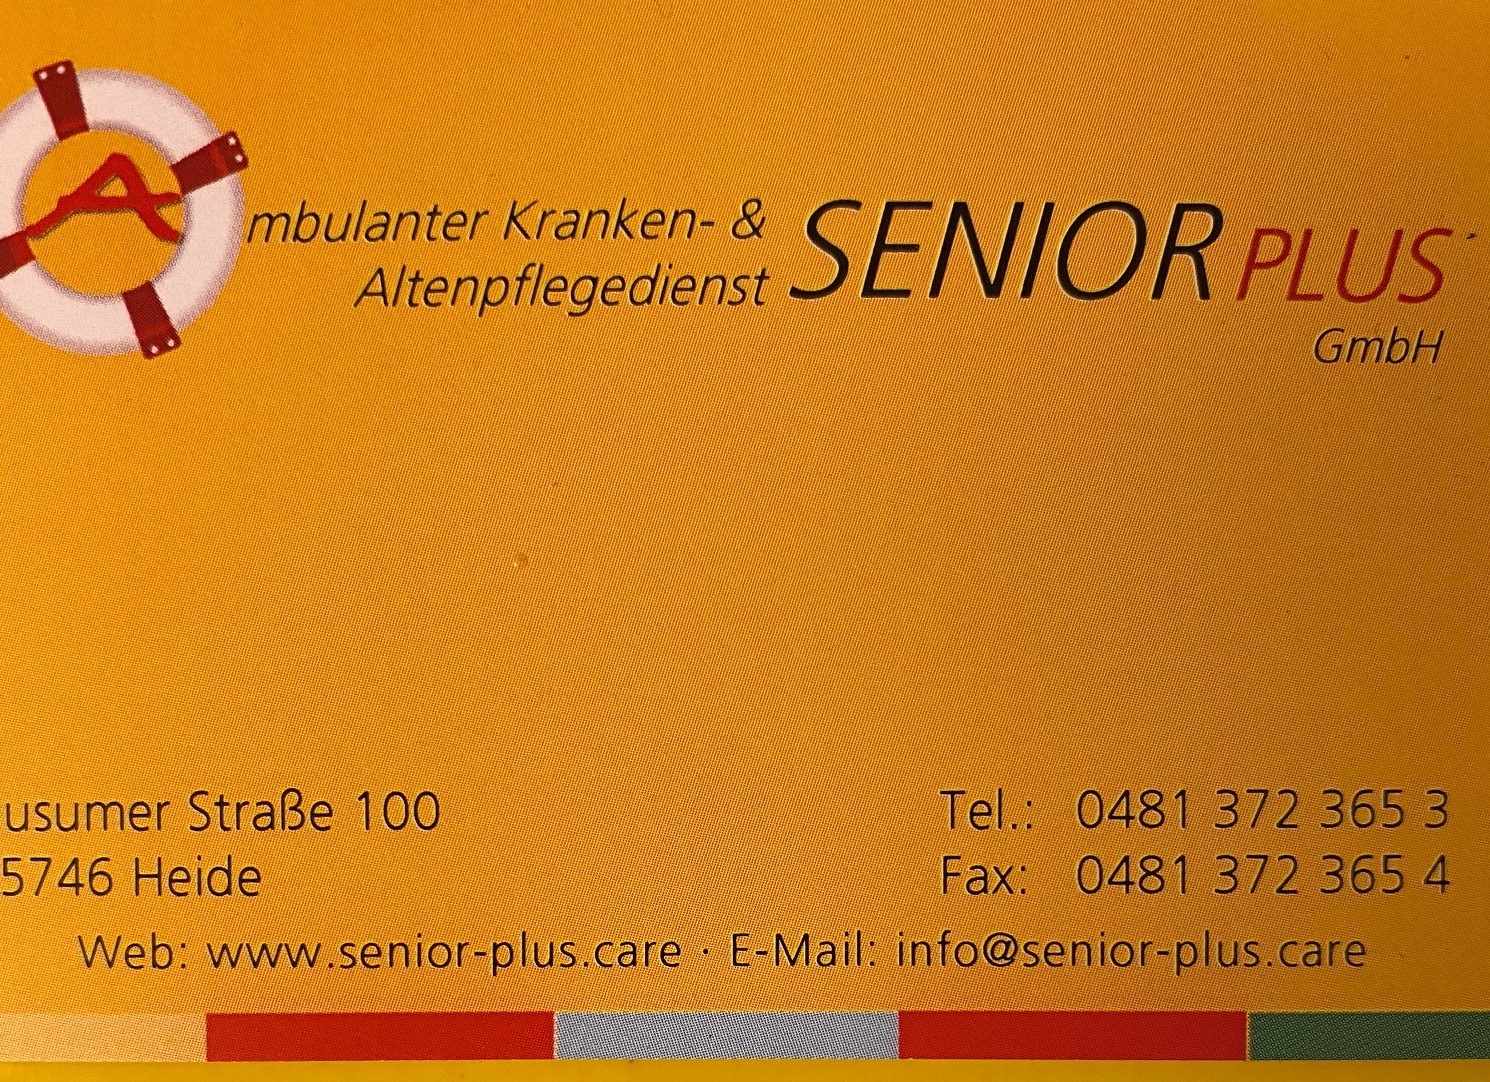 Bild 5 Ambulanter Kranken- & Altenpflegedienst Senior Plus GmbH in Heide